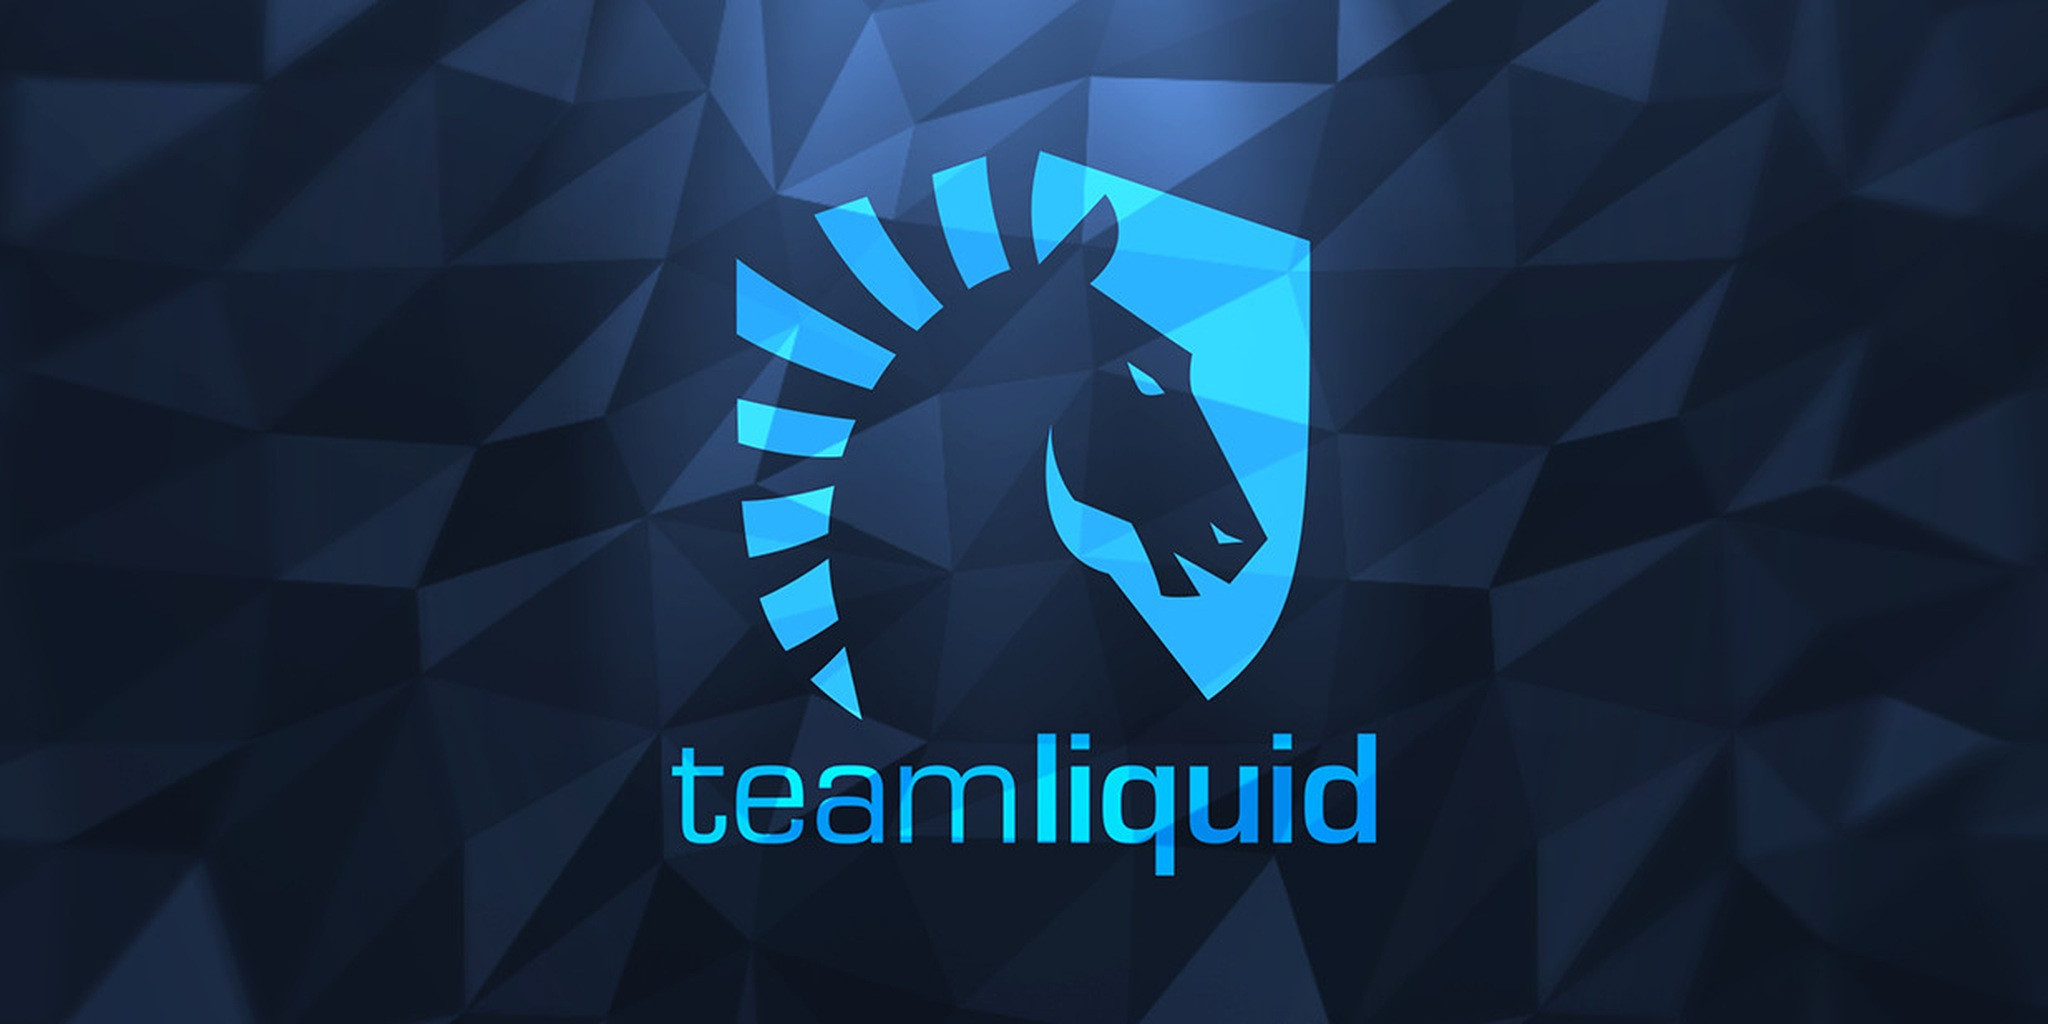 team liquid wallpaper,blue,logo,text,font,graphic design